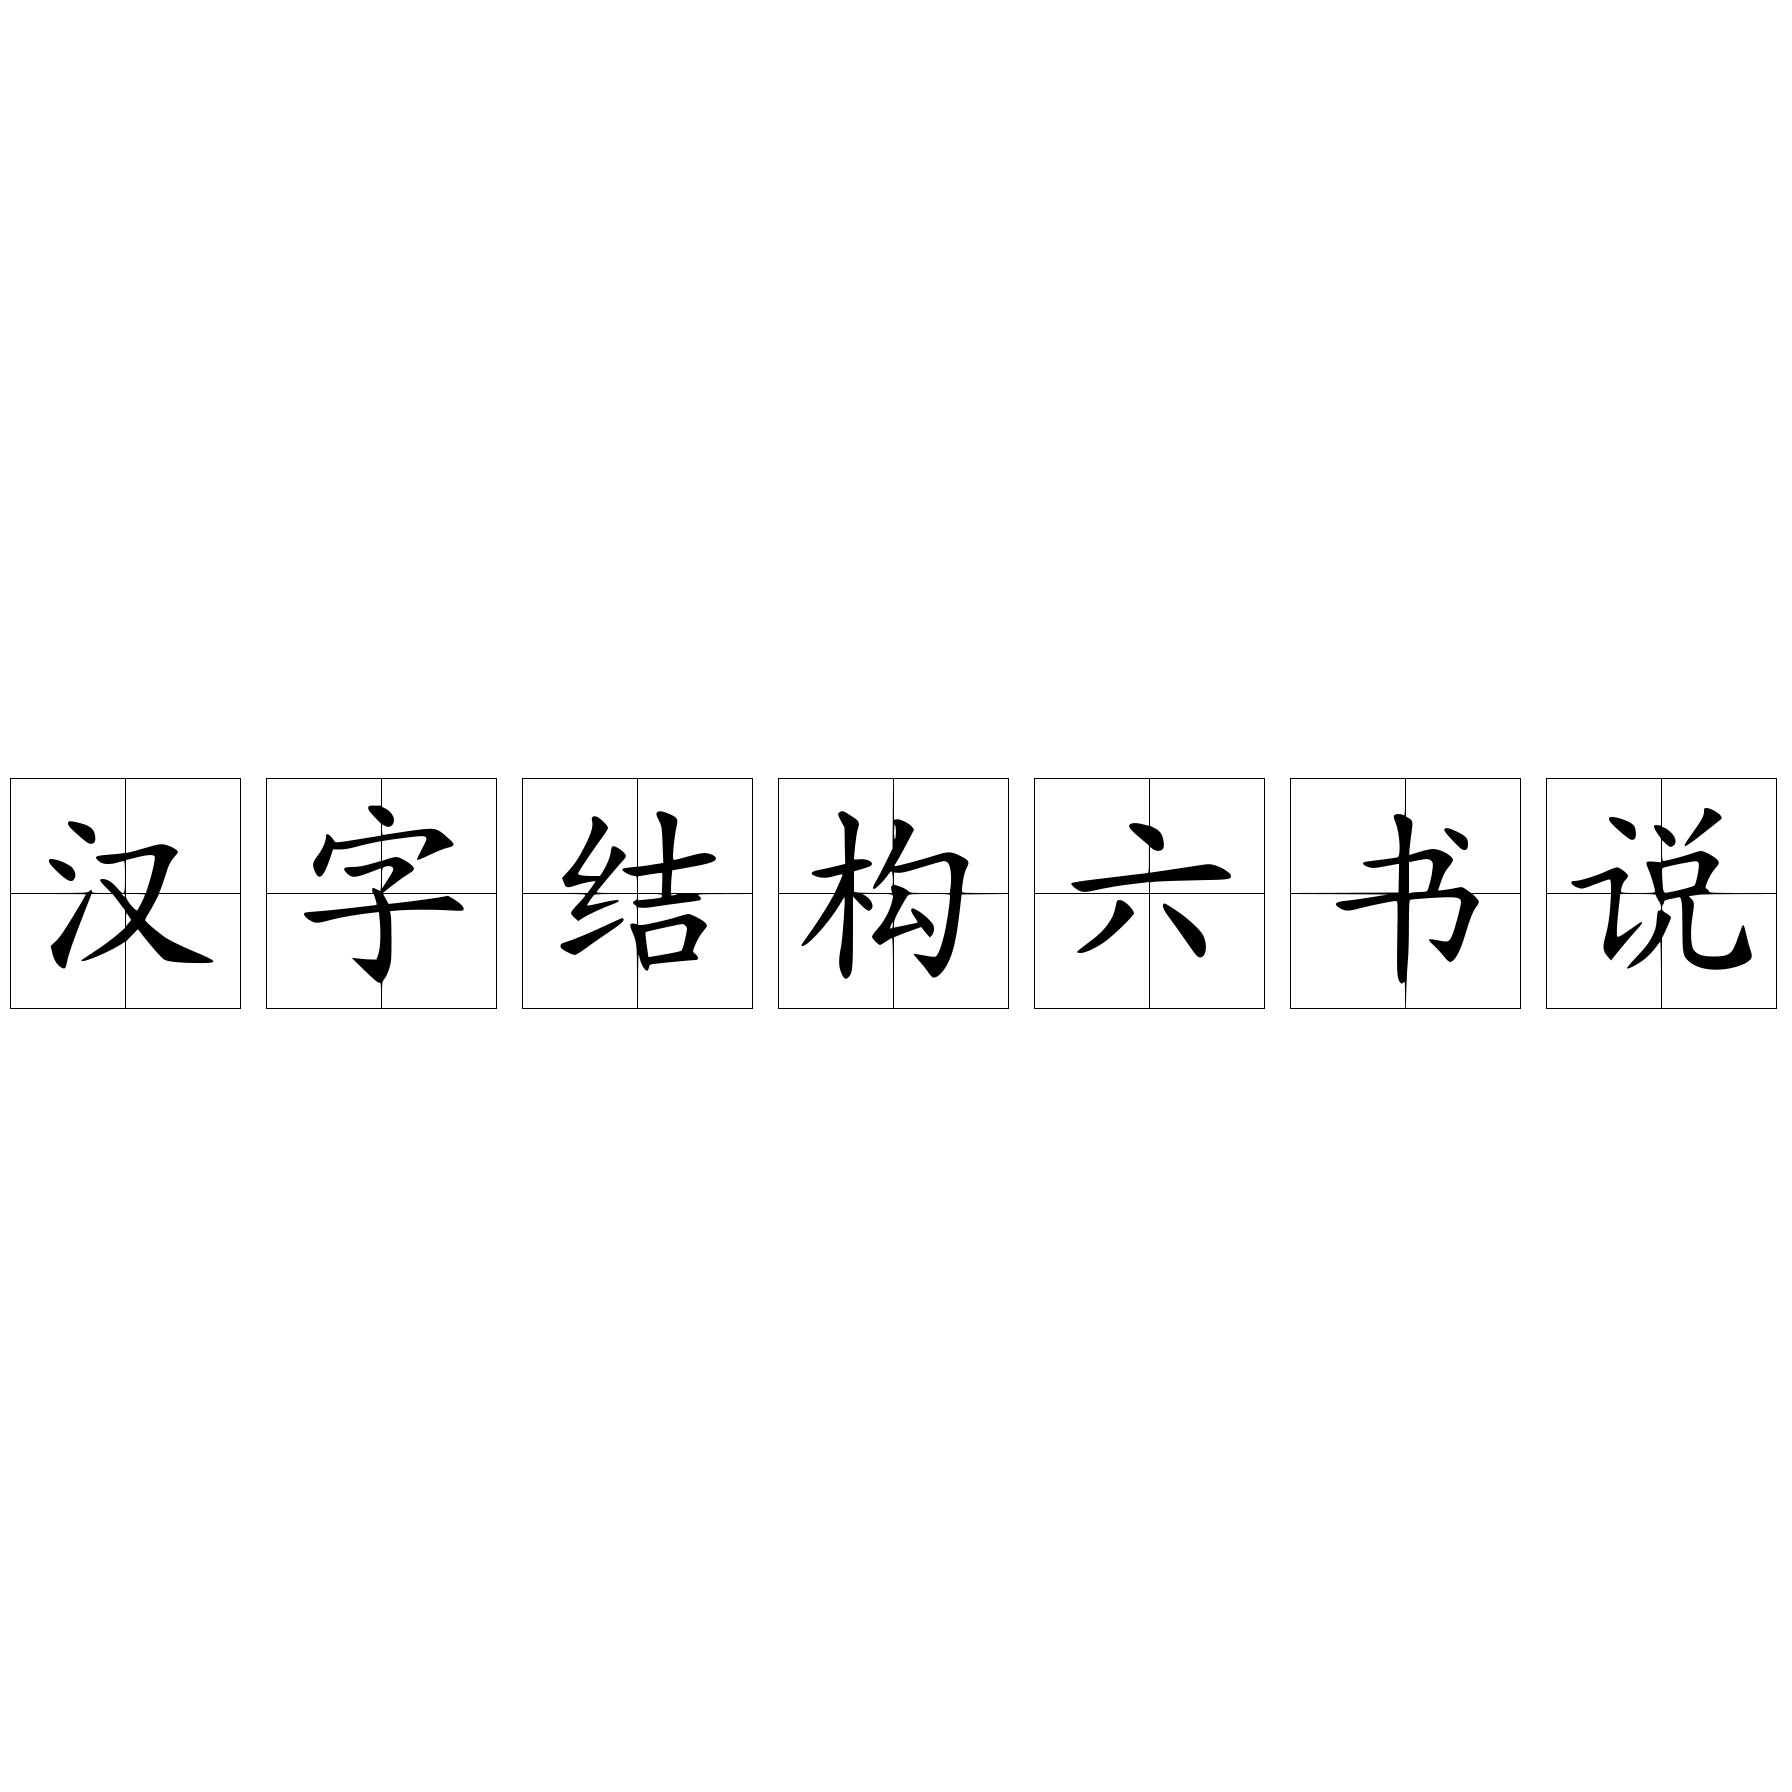 汉字结构六书说 快懂百科